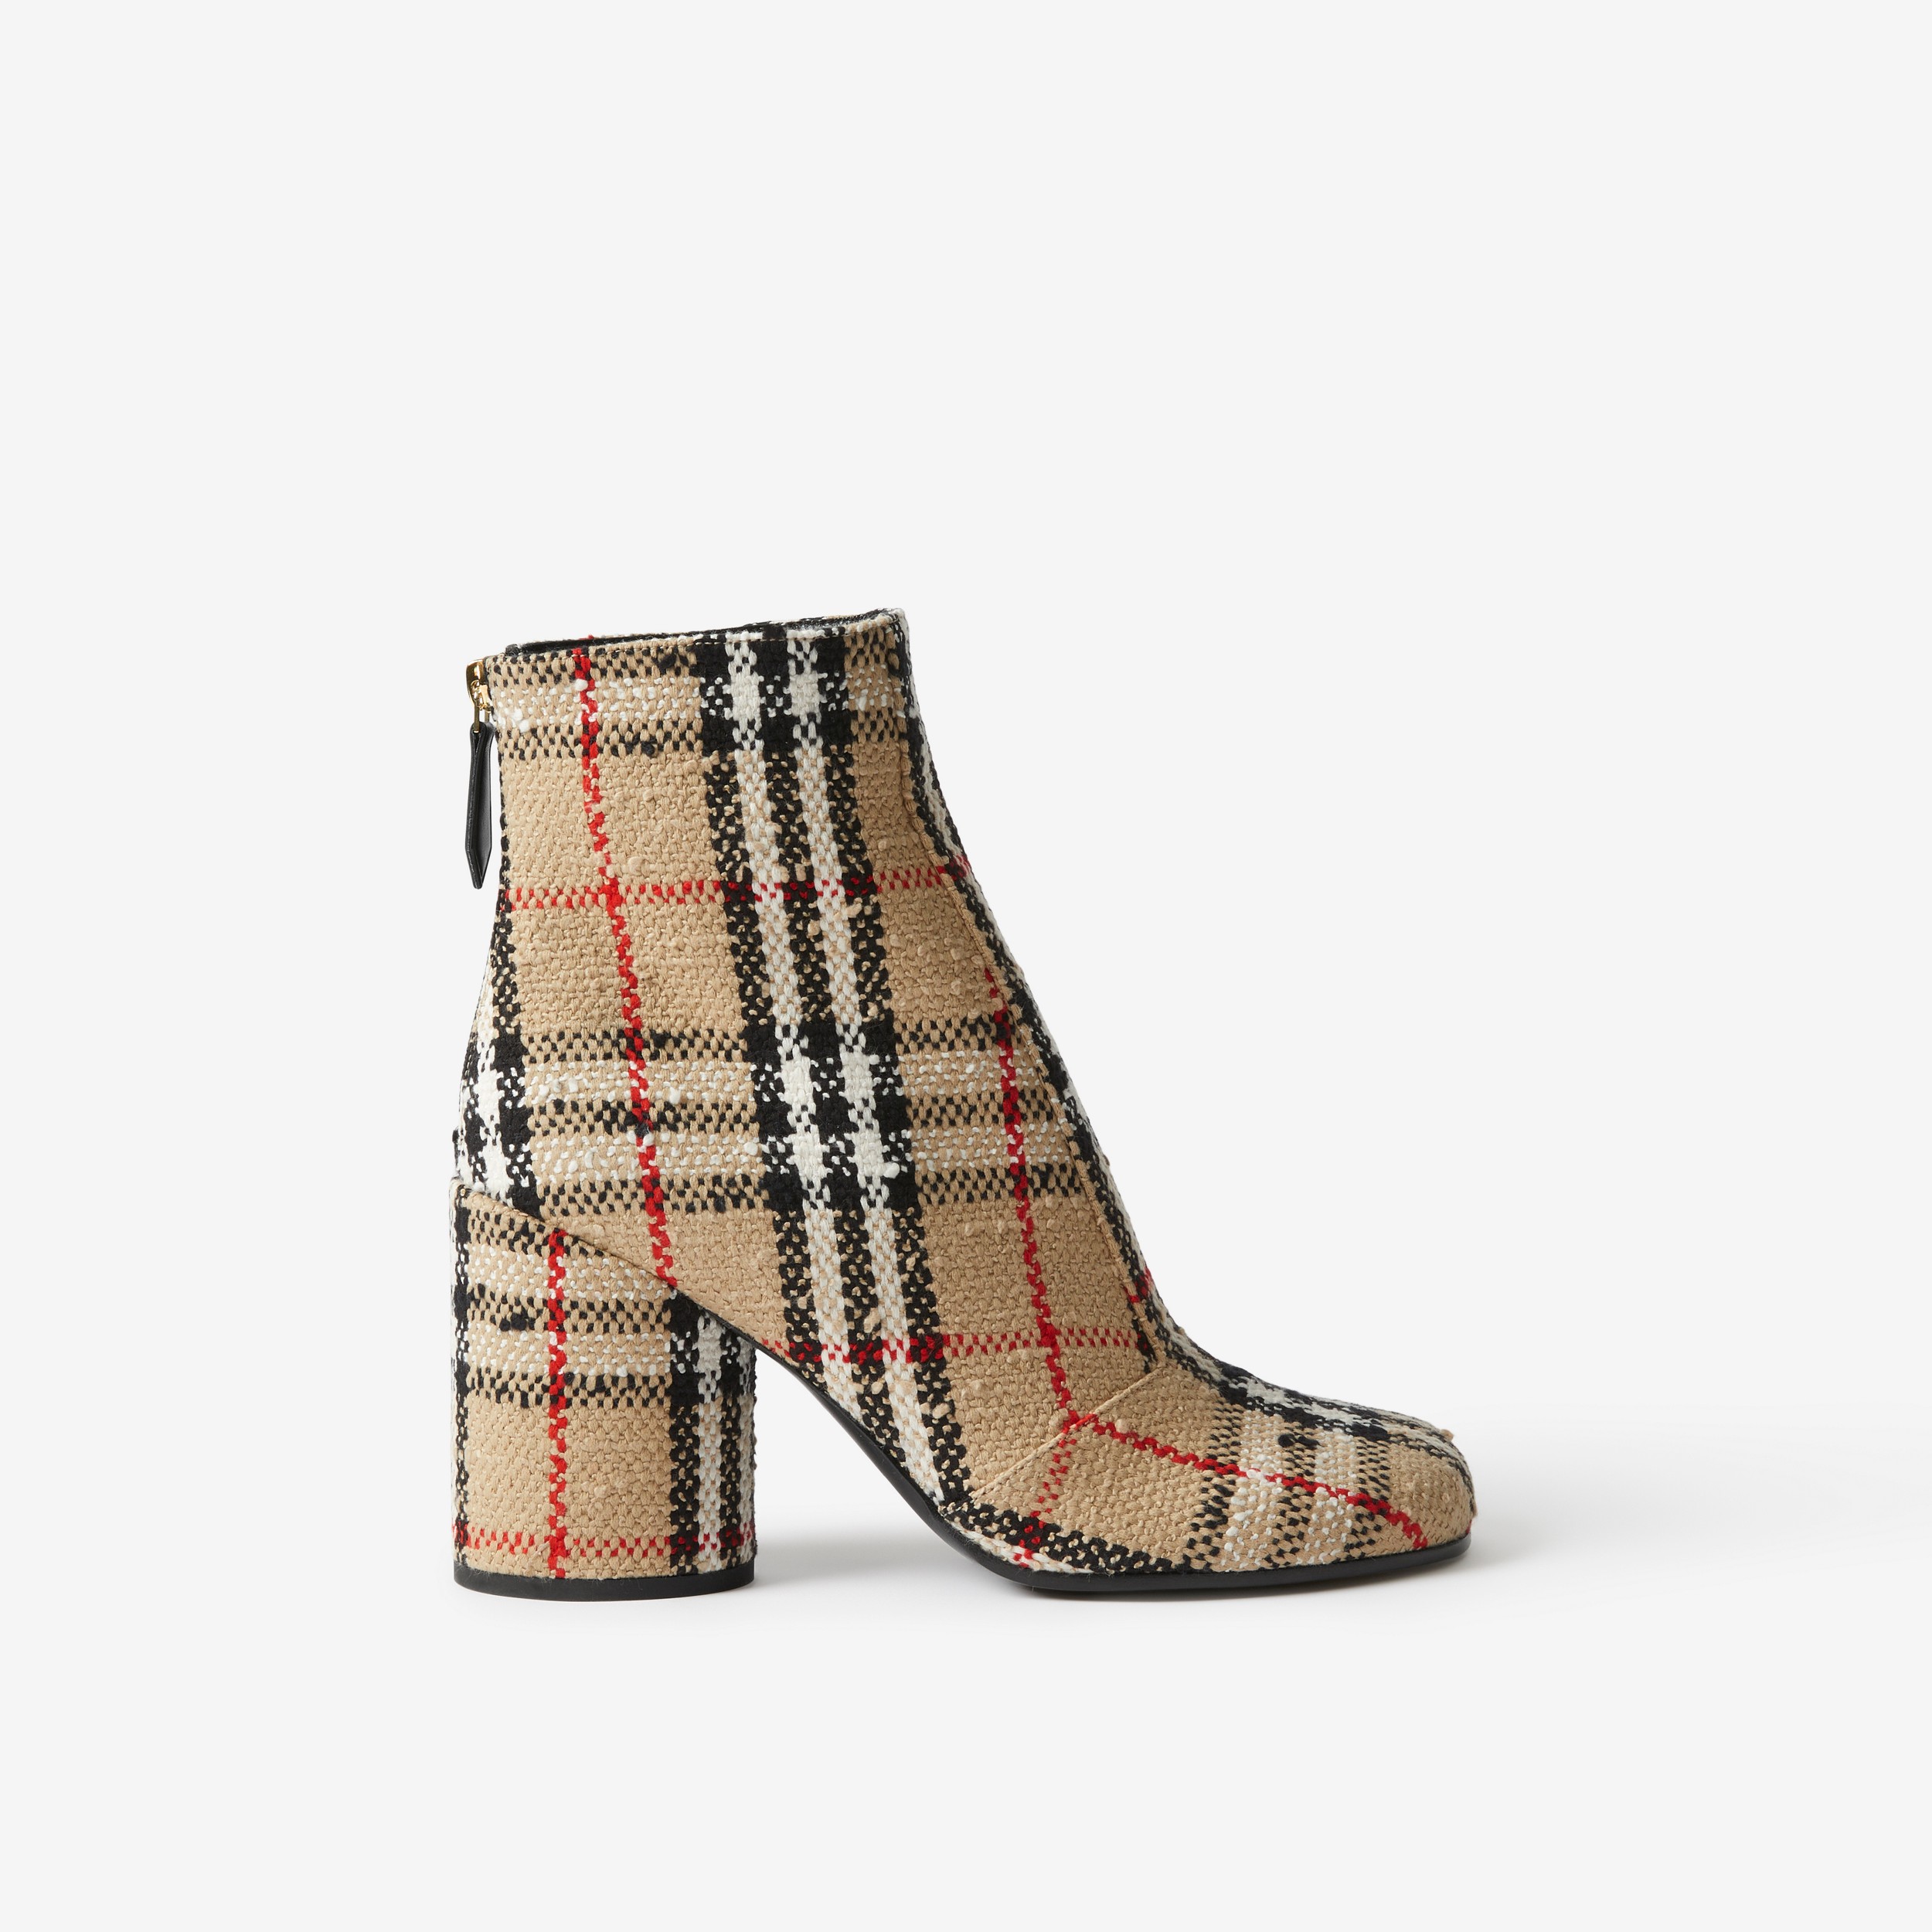 Ankle boots em Vintage Check Bouclé (Bege Clássico) - Mulheres | Burberry® oficial - 1